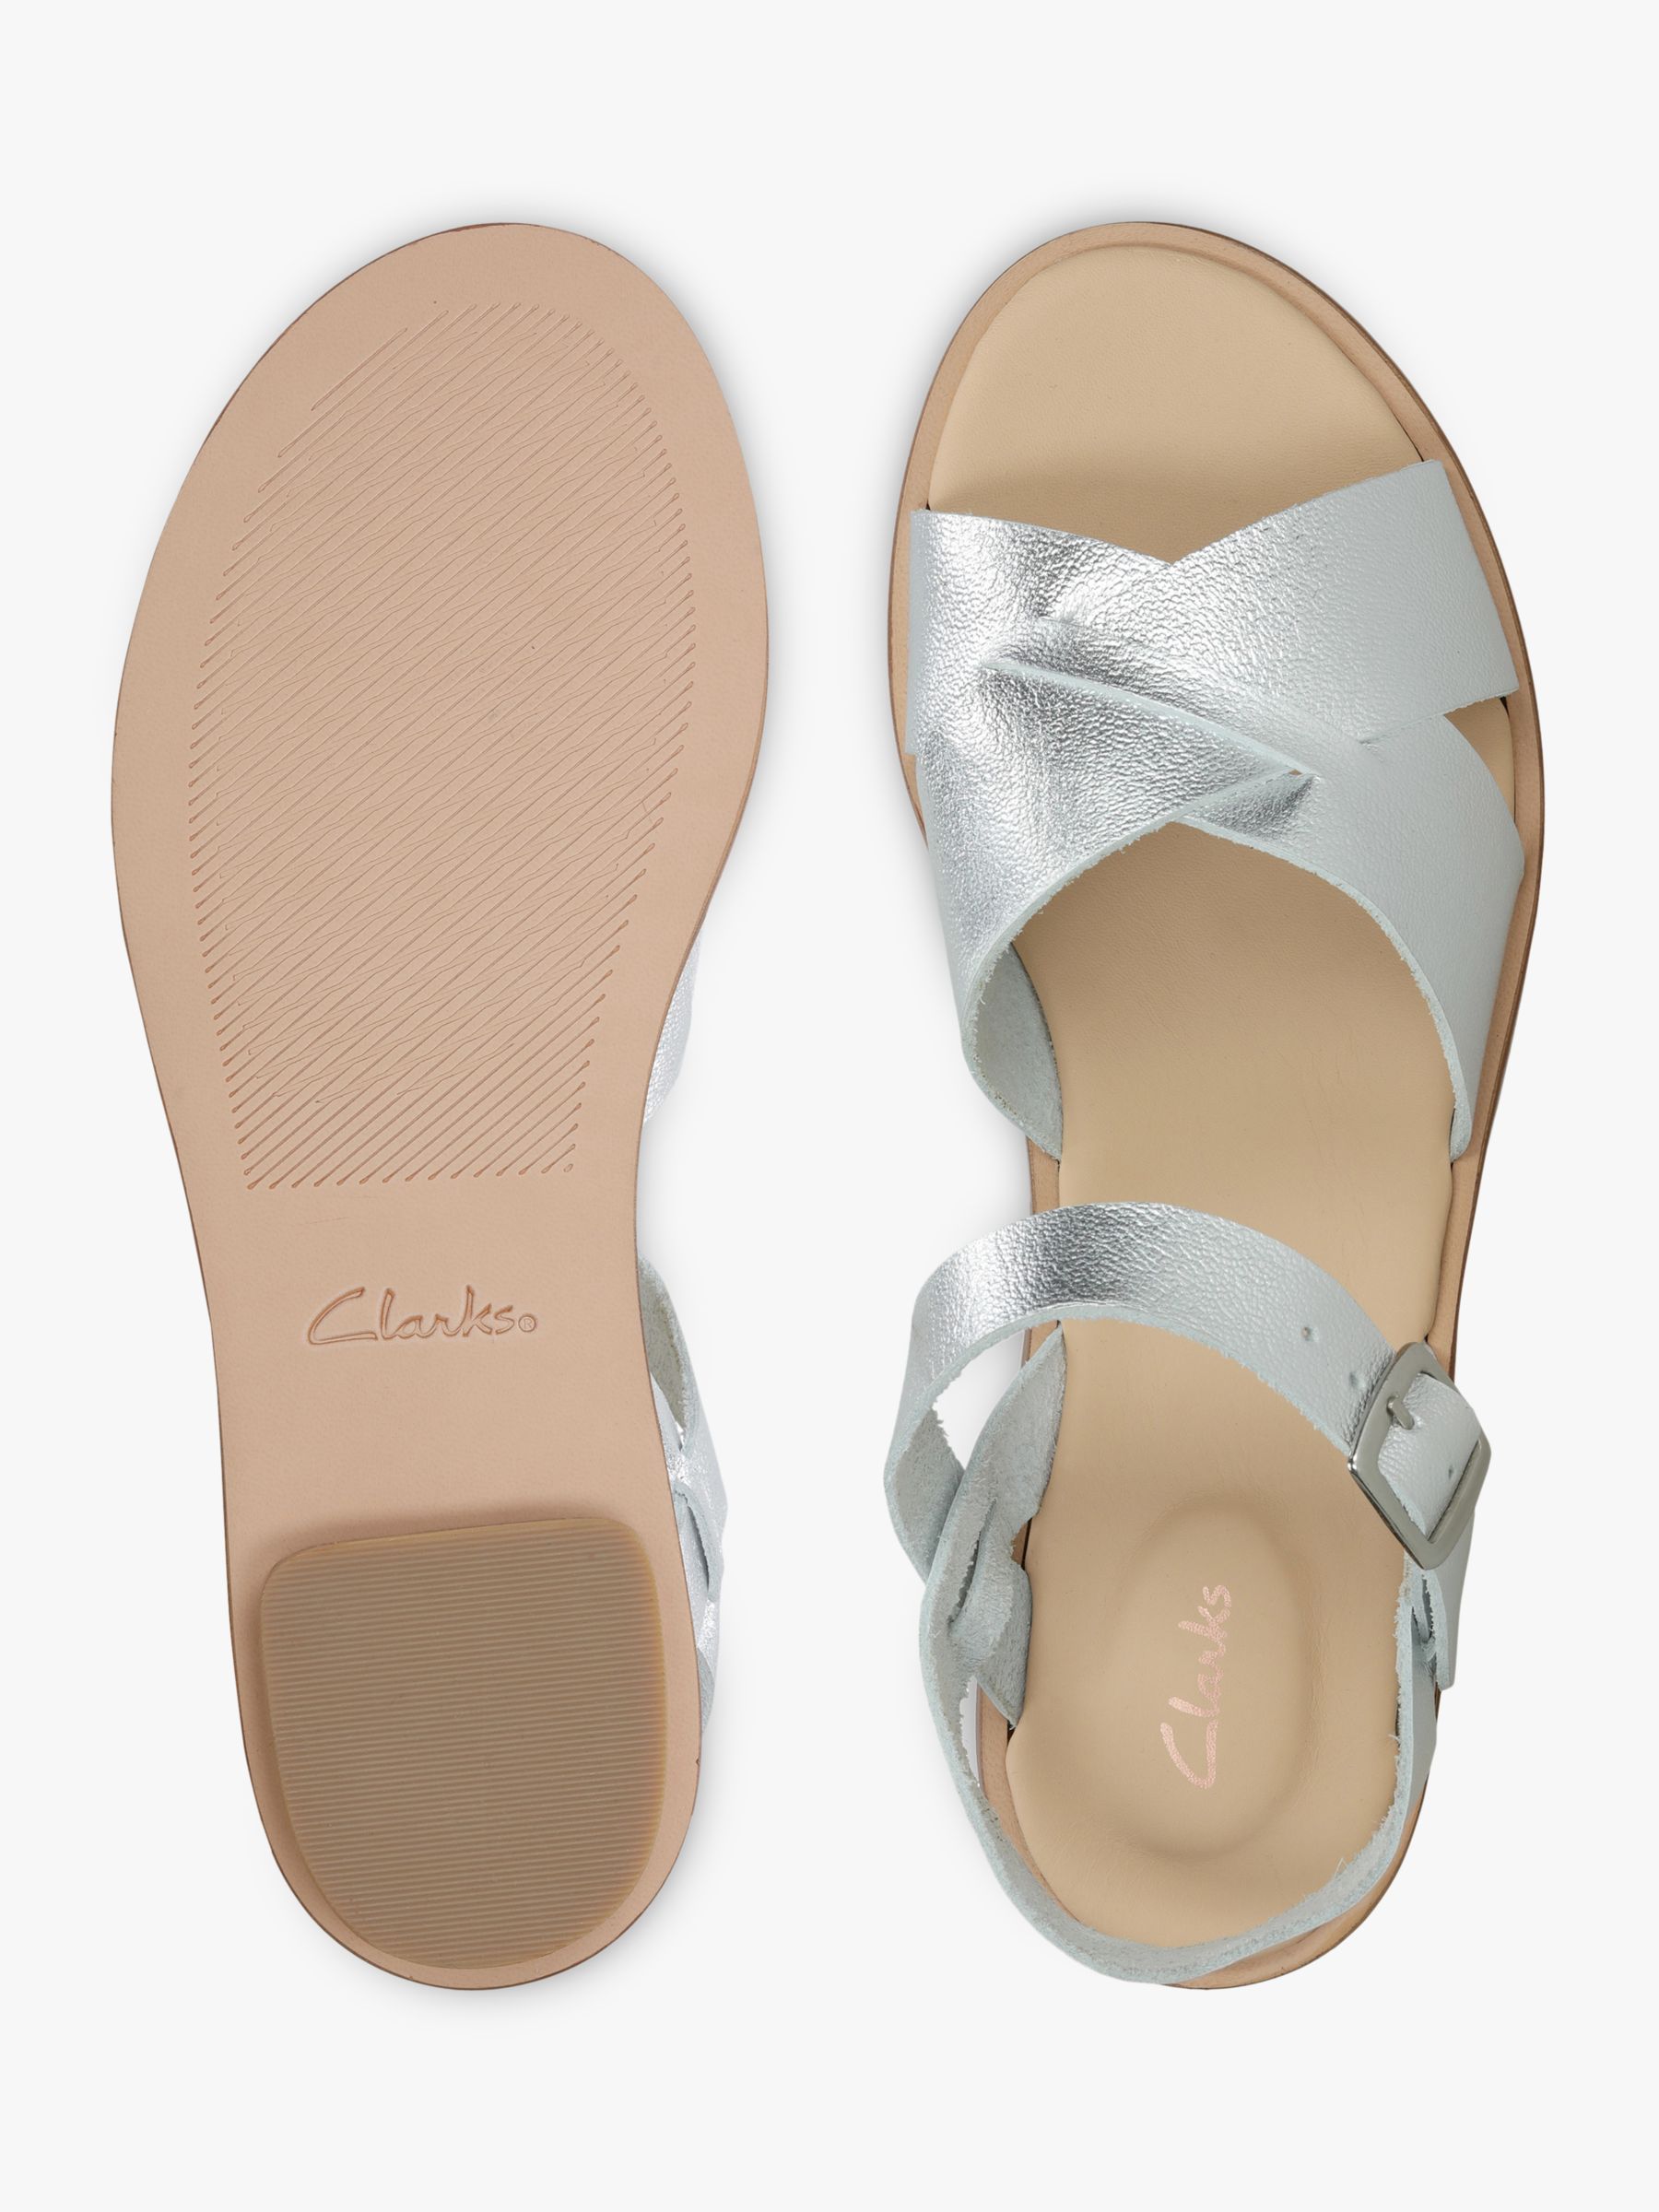 clarks silver flip flops